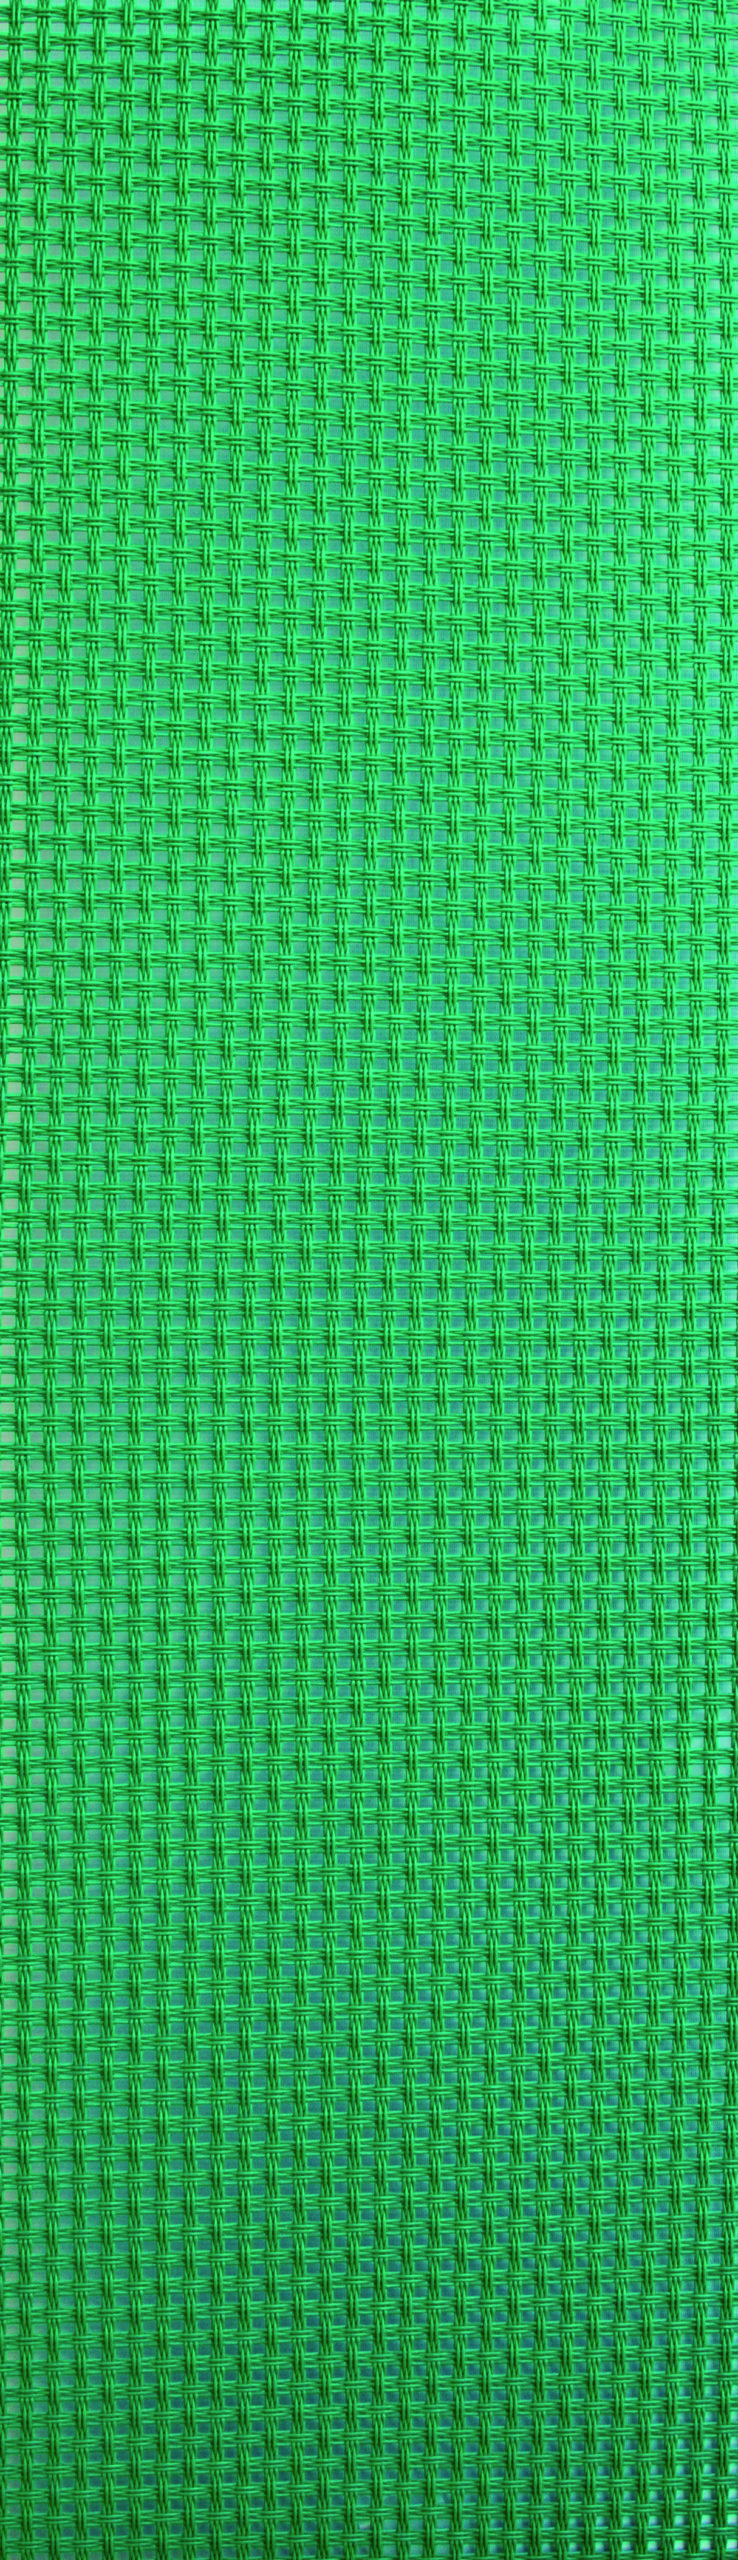 Verde Forato 3103